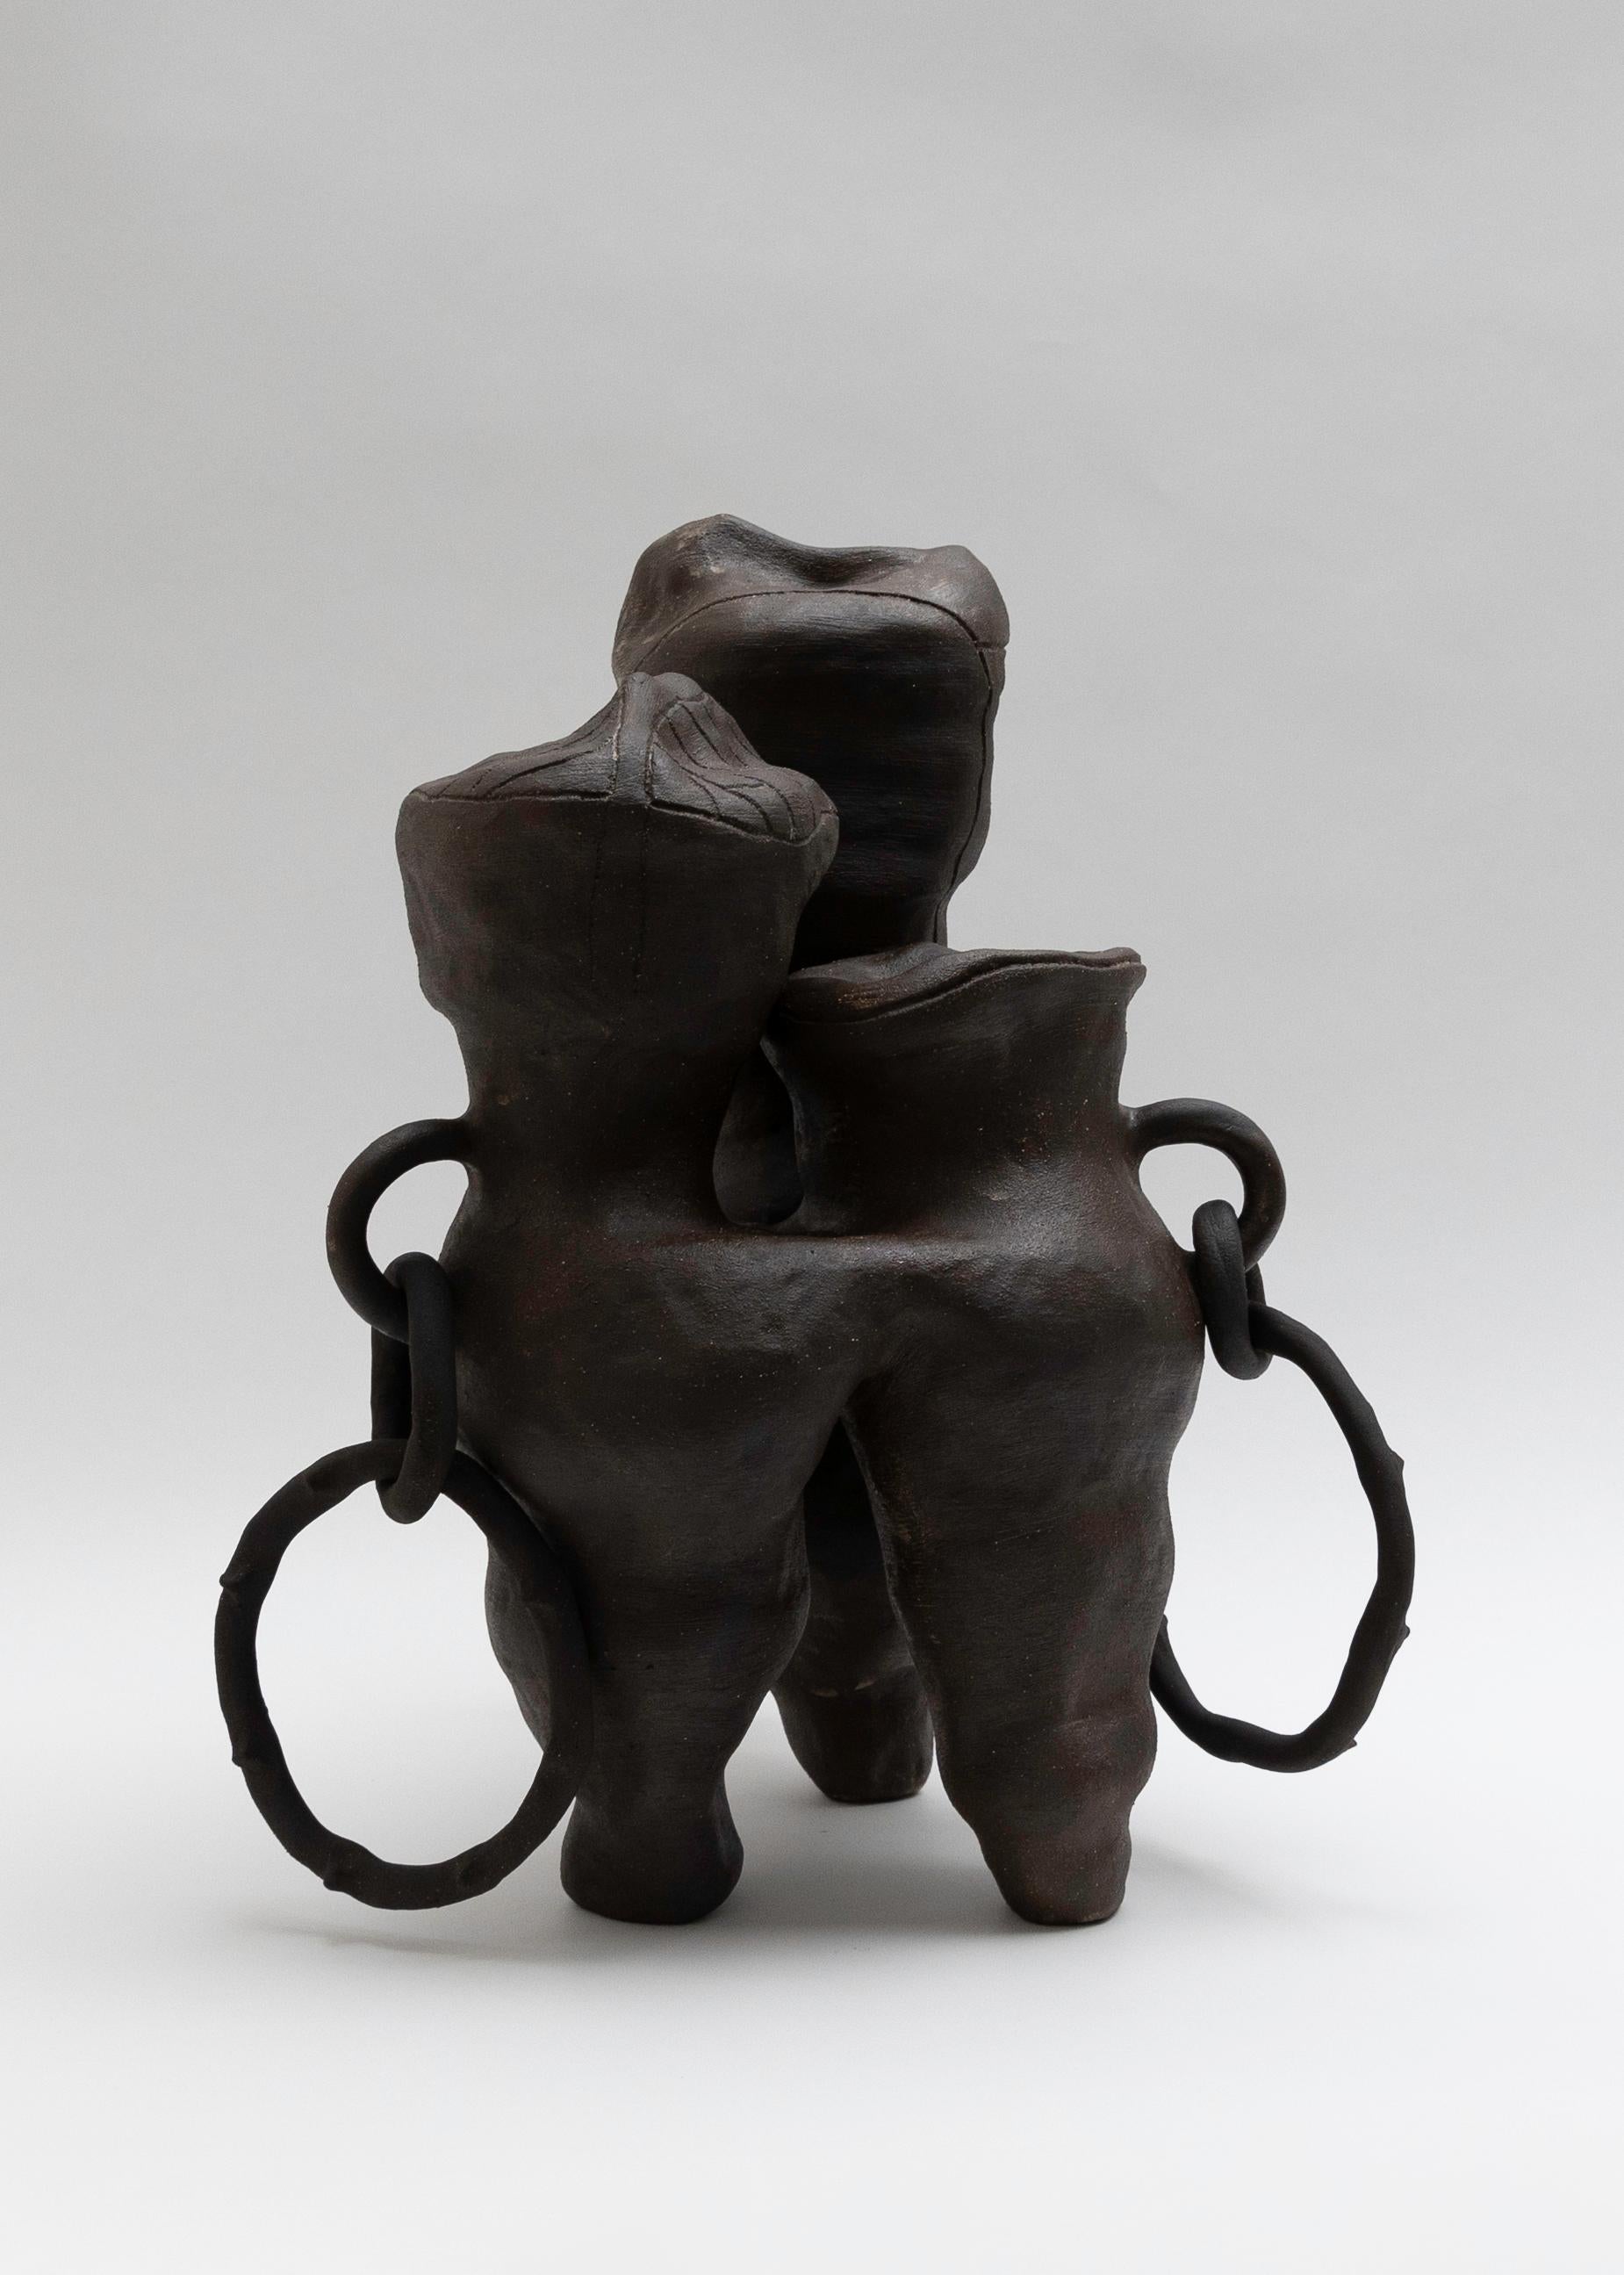 Clay Walker 02 Sculpture by Eglė Šimkus For Sale